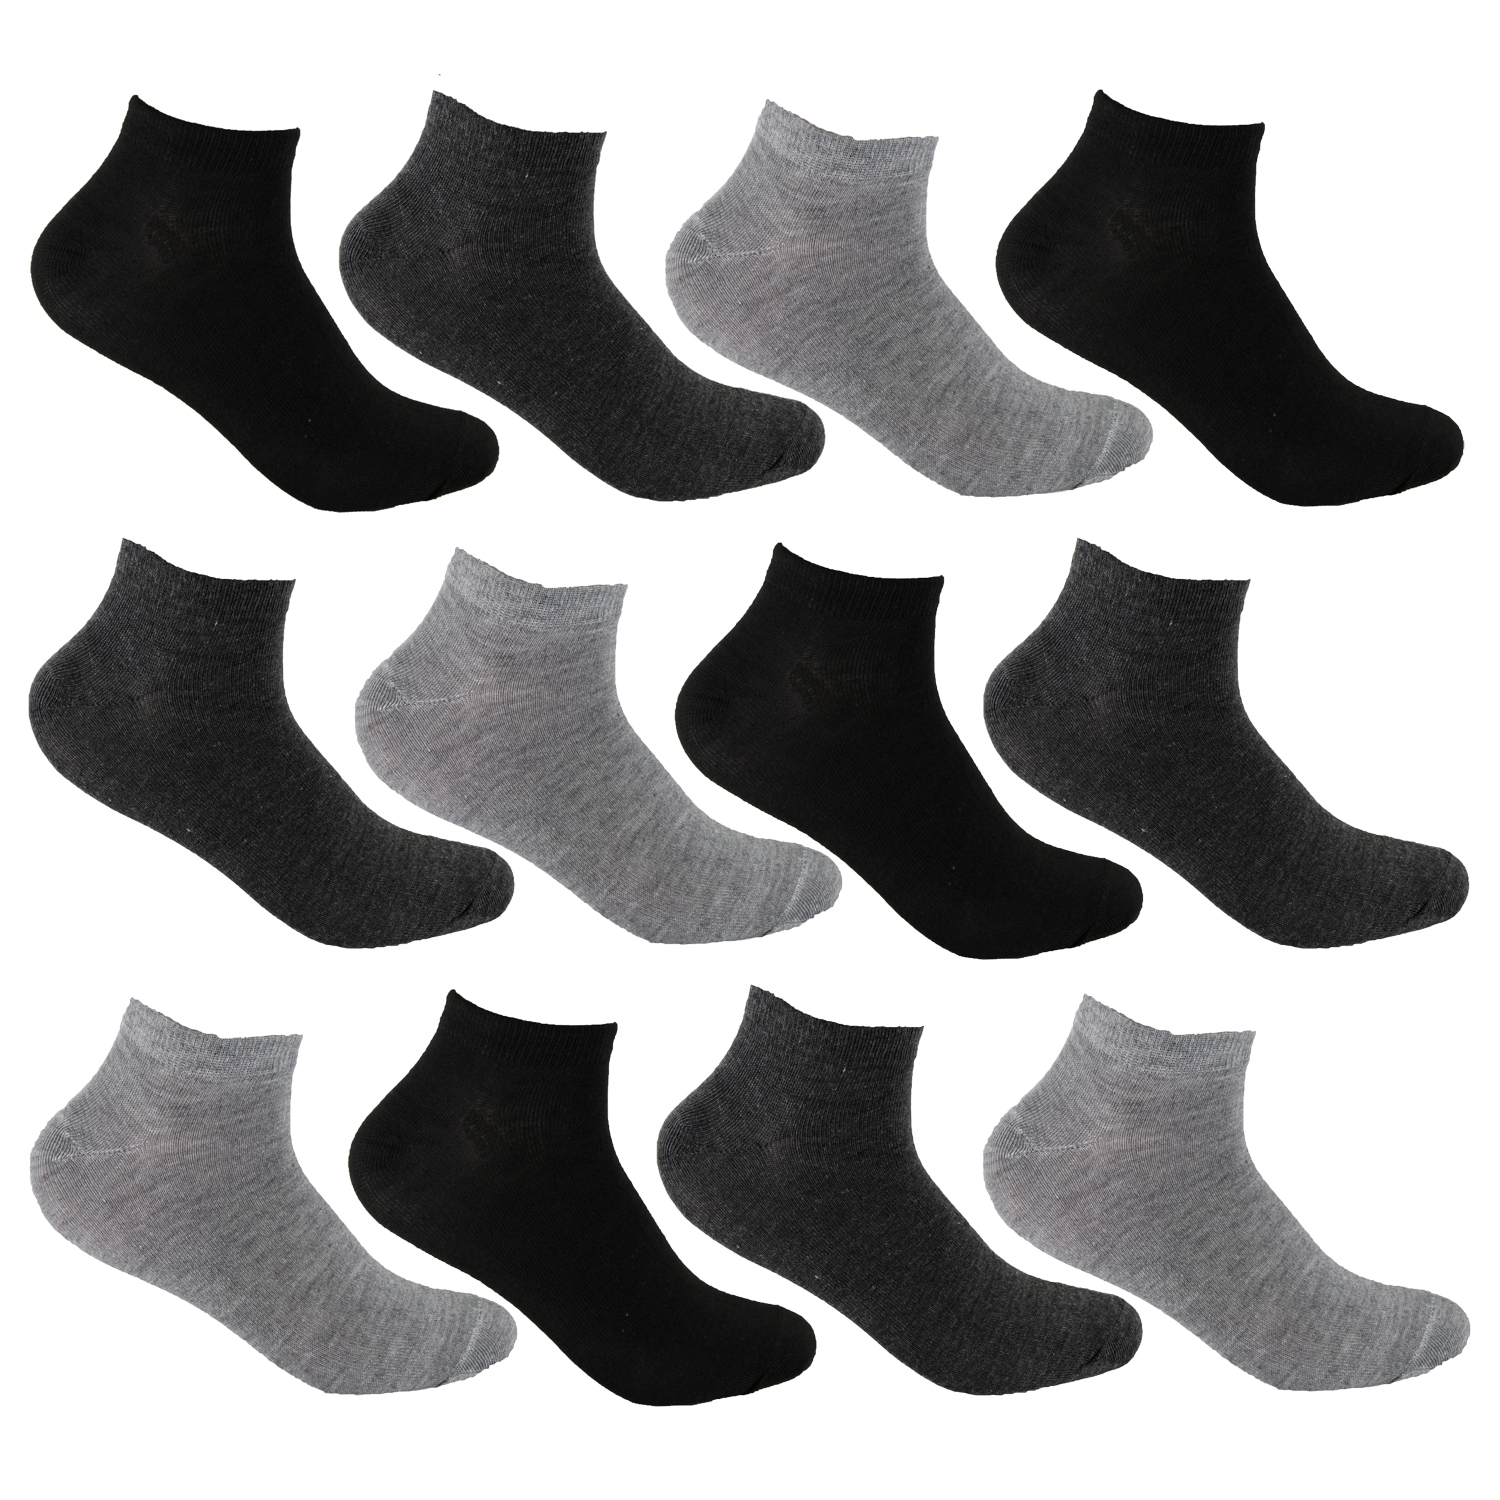 L/&K 12 Paar Herren Sneaker-Socken mehrfarbig schwarz und wei/ß zur Auswahl